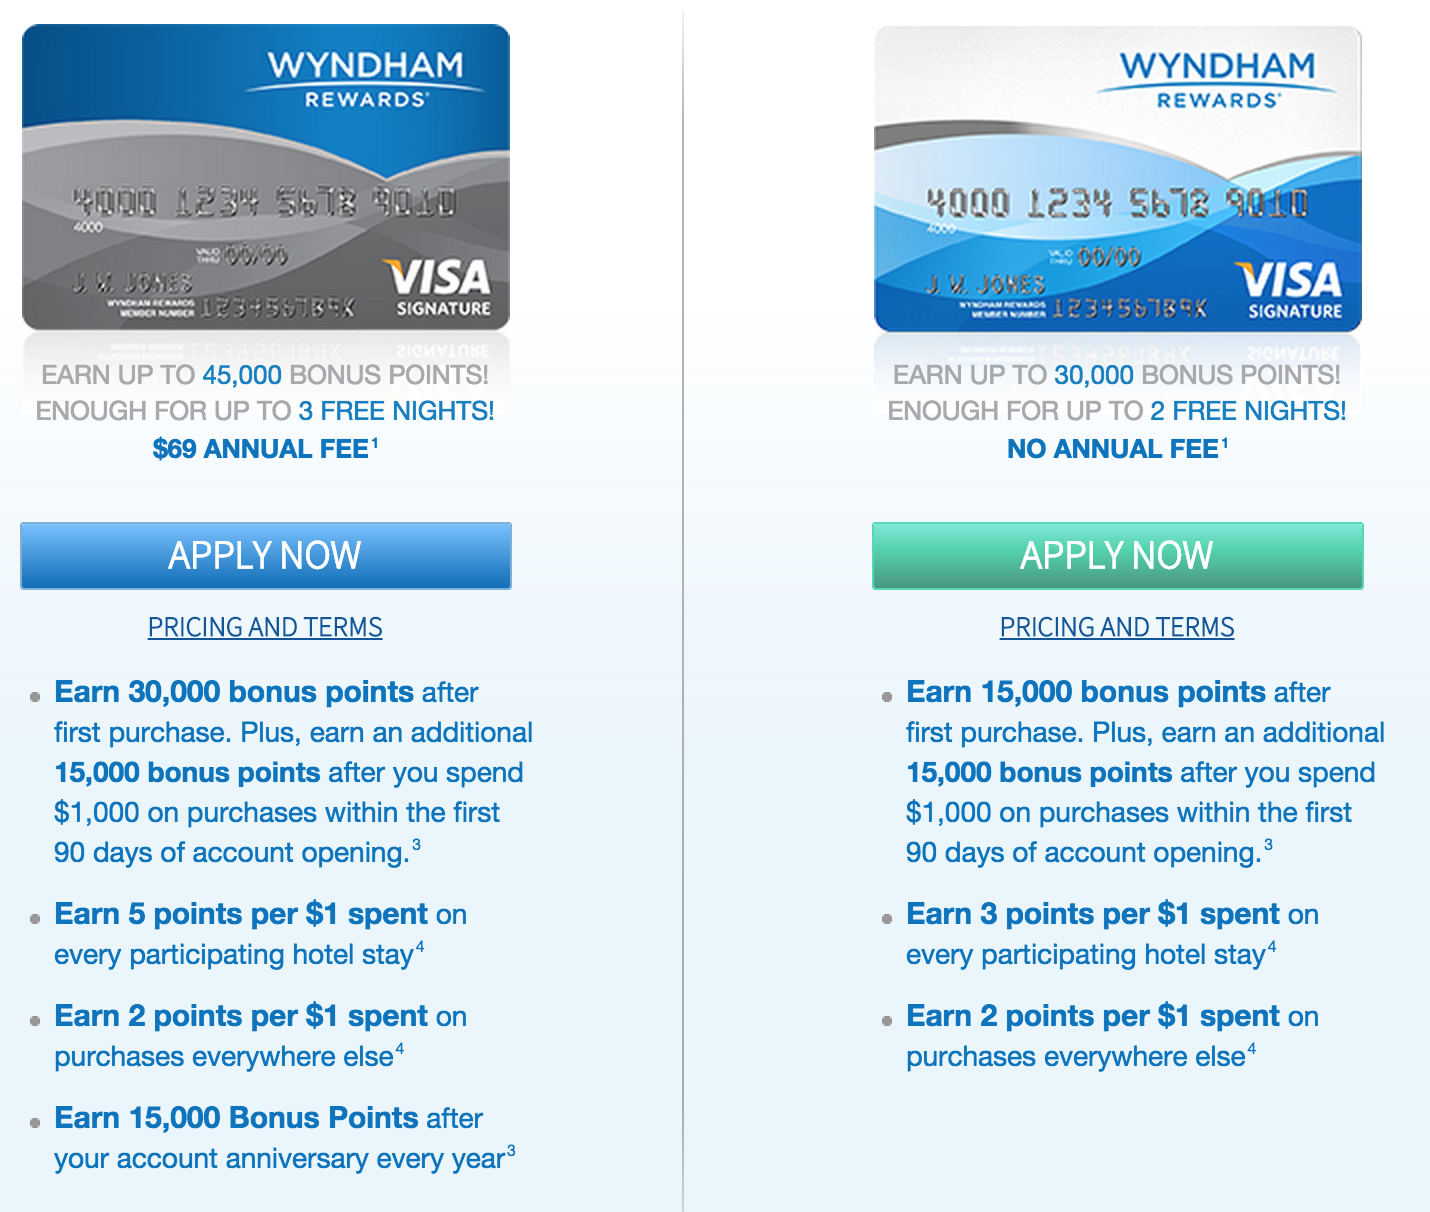 Wyndham Rewards Visa Credit Card Reviews